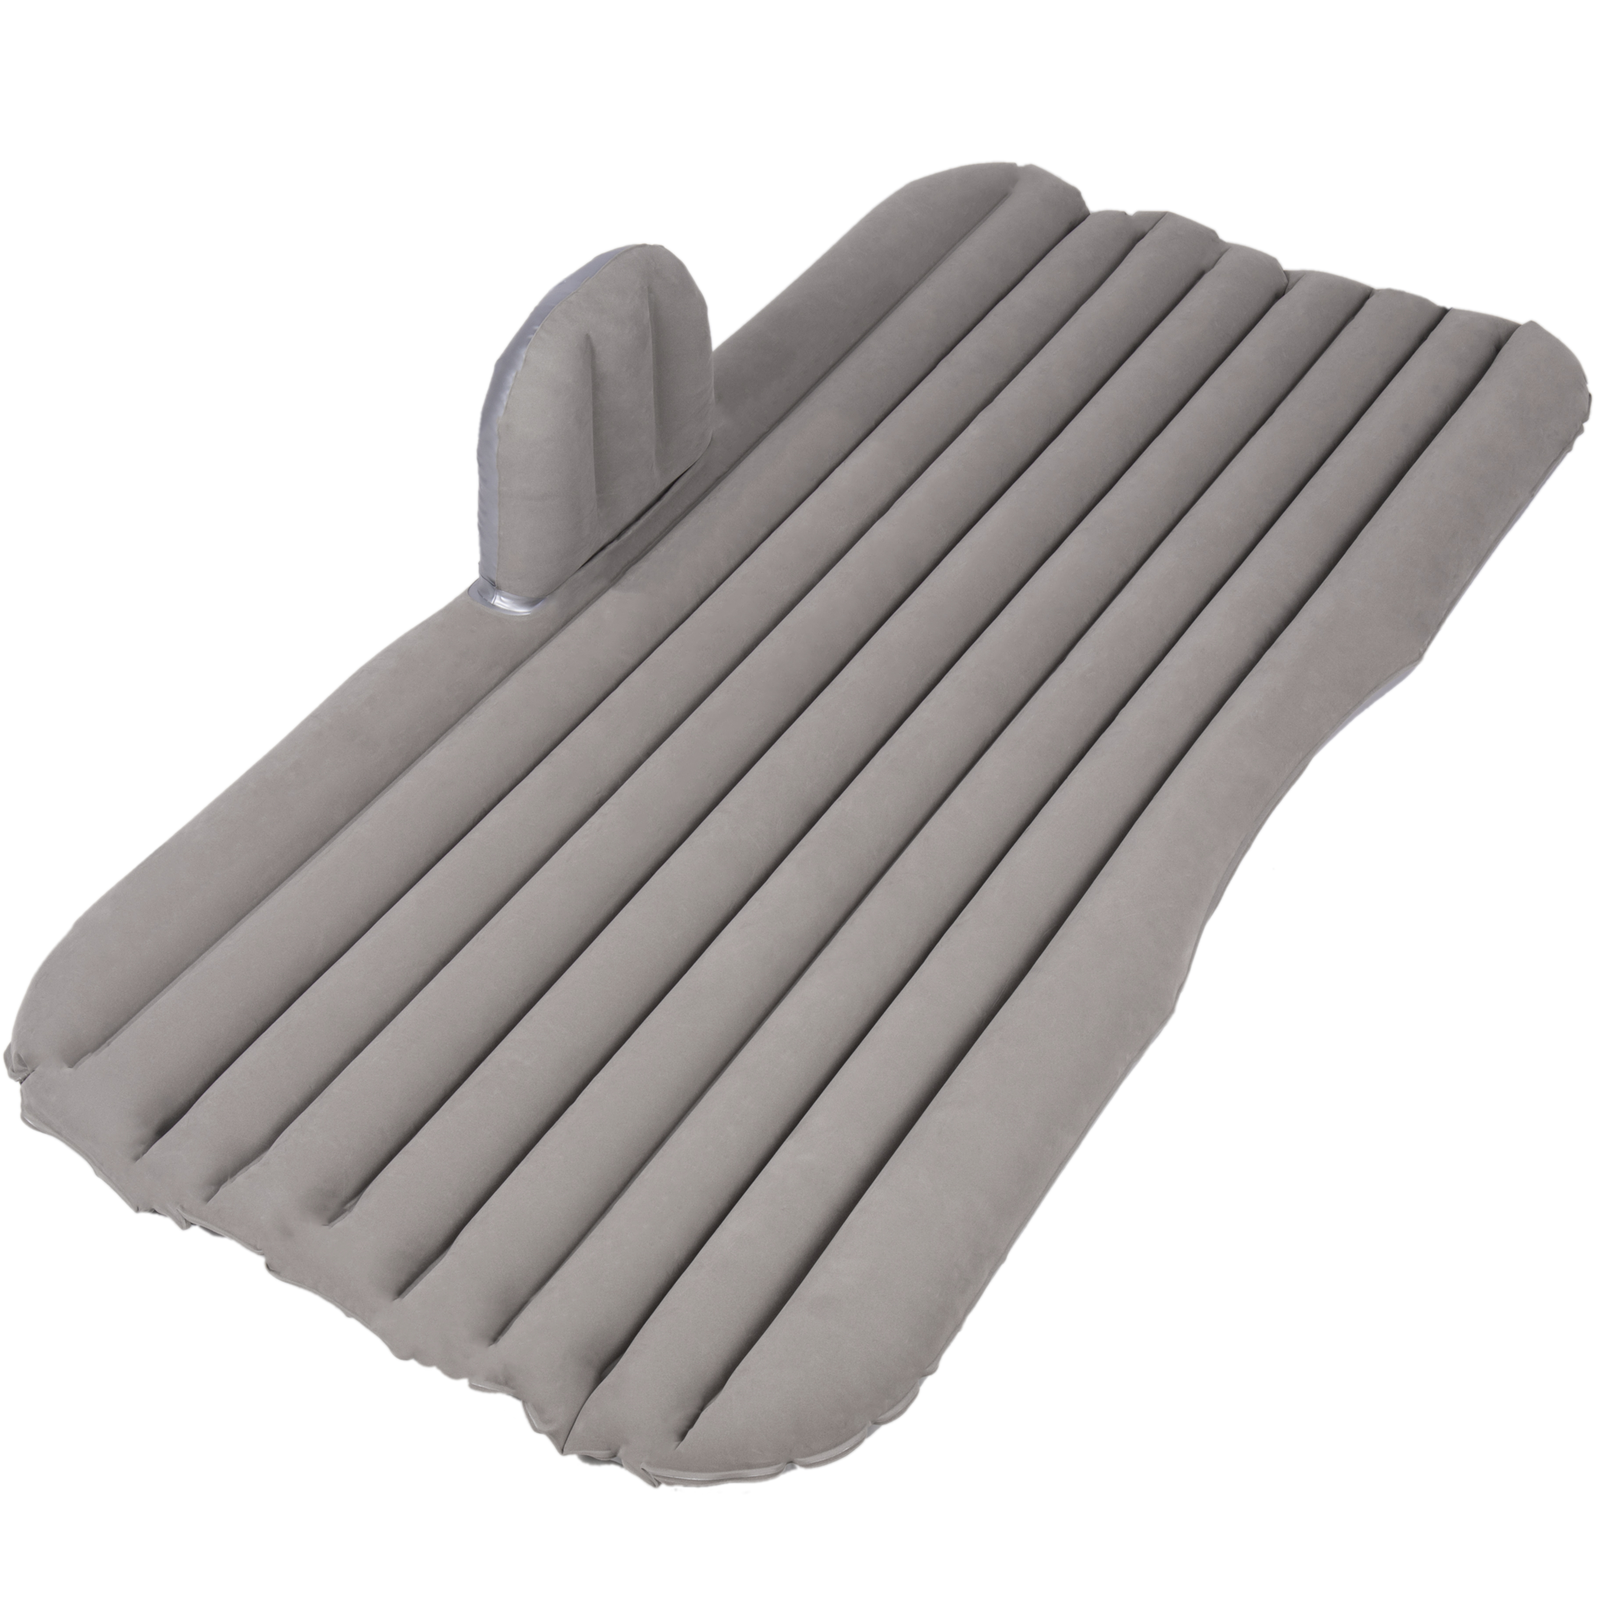 Colchón hinchable gris Kit completo de cama inflable para dormir coche bomba aire eléctrico y almohadas | Leroy Merlin